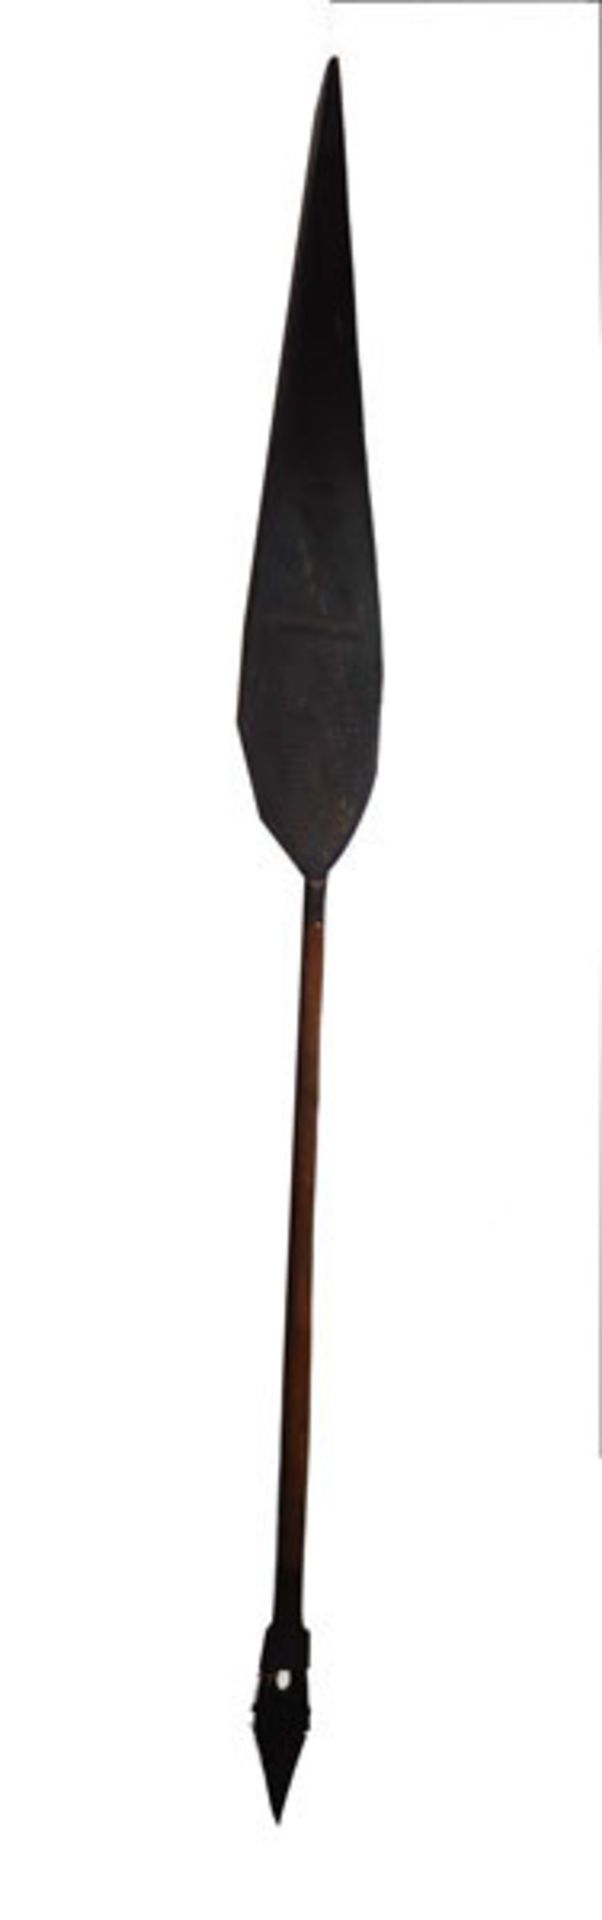 Afrikanischer Speer, verziert, L 148 cm, Alters- und Gebrauchsspuren, kein Versand, Abholung oder